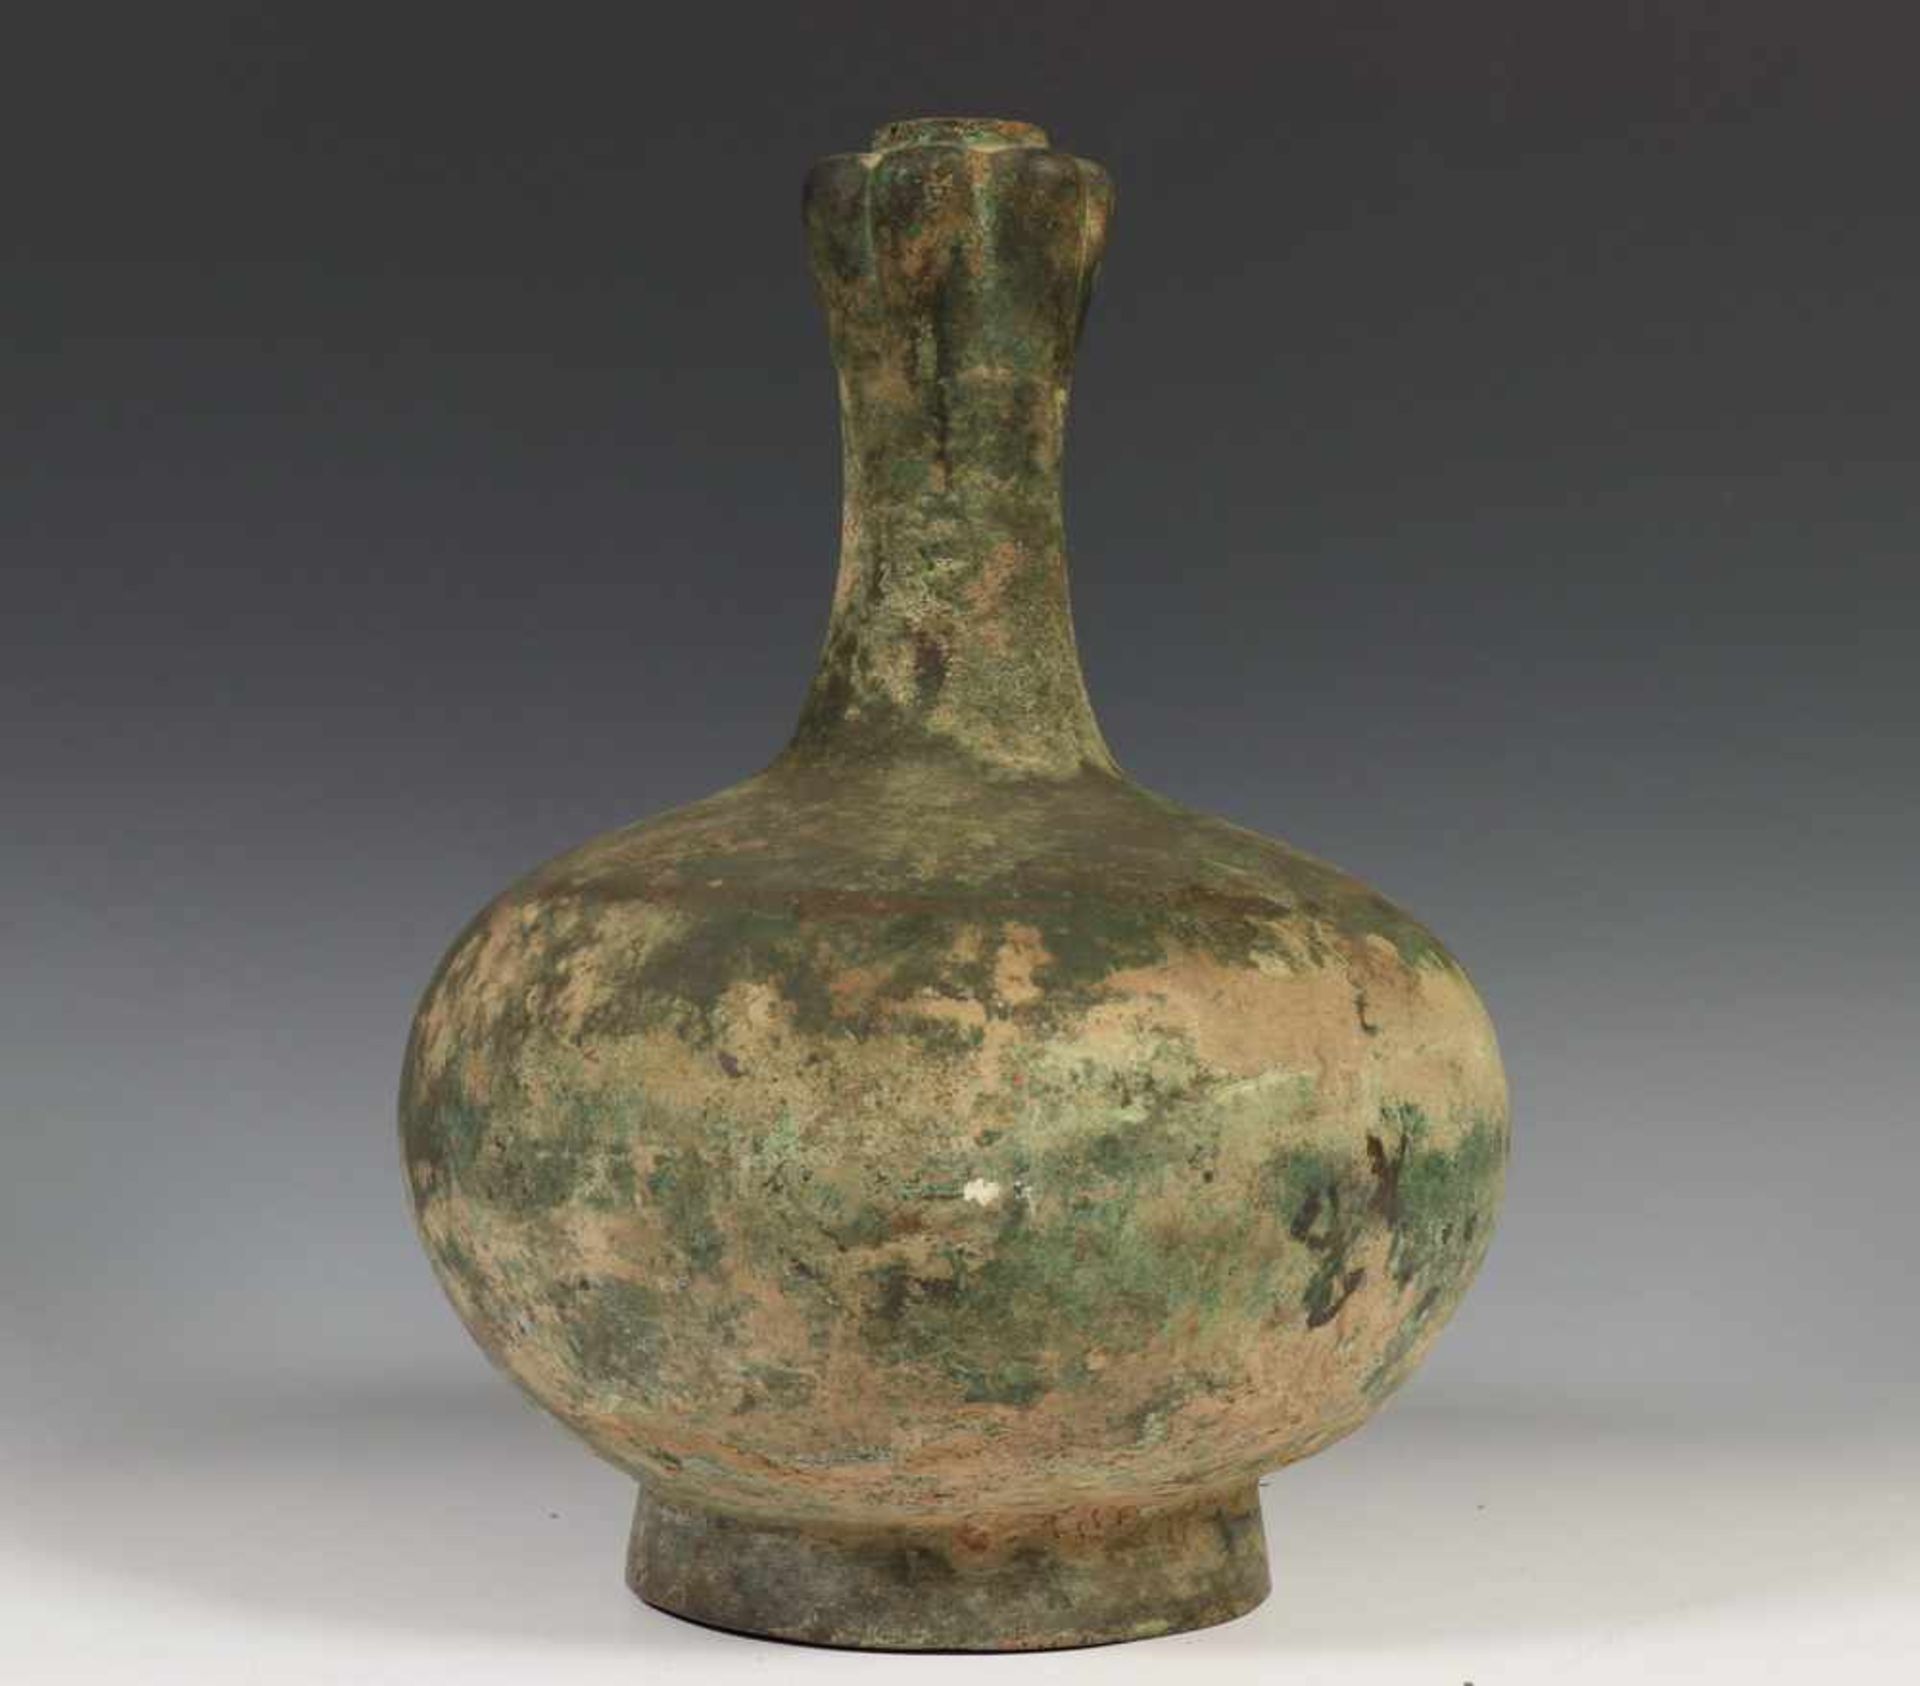 China, antiek bronzen 'garlic head' ofwel 'suantouping' vaas in Han ofwel archaische stijl,met groen